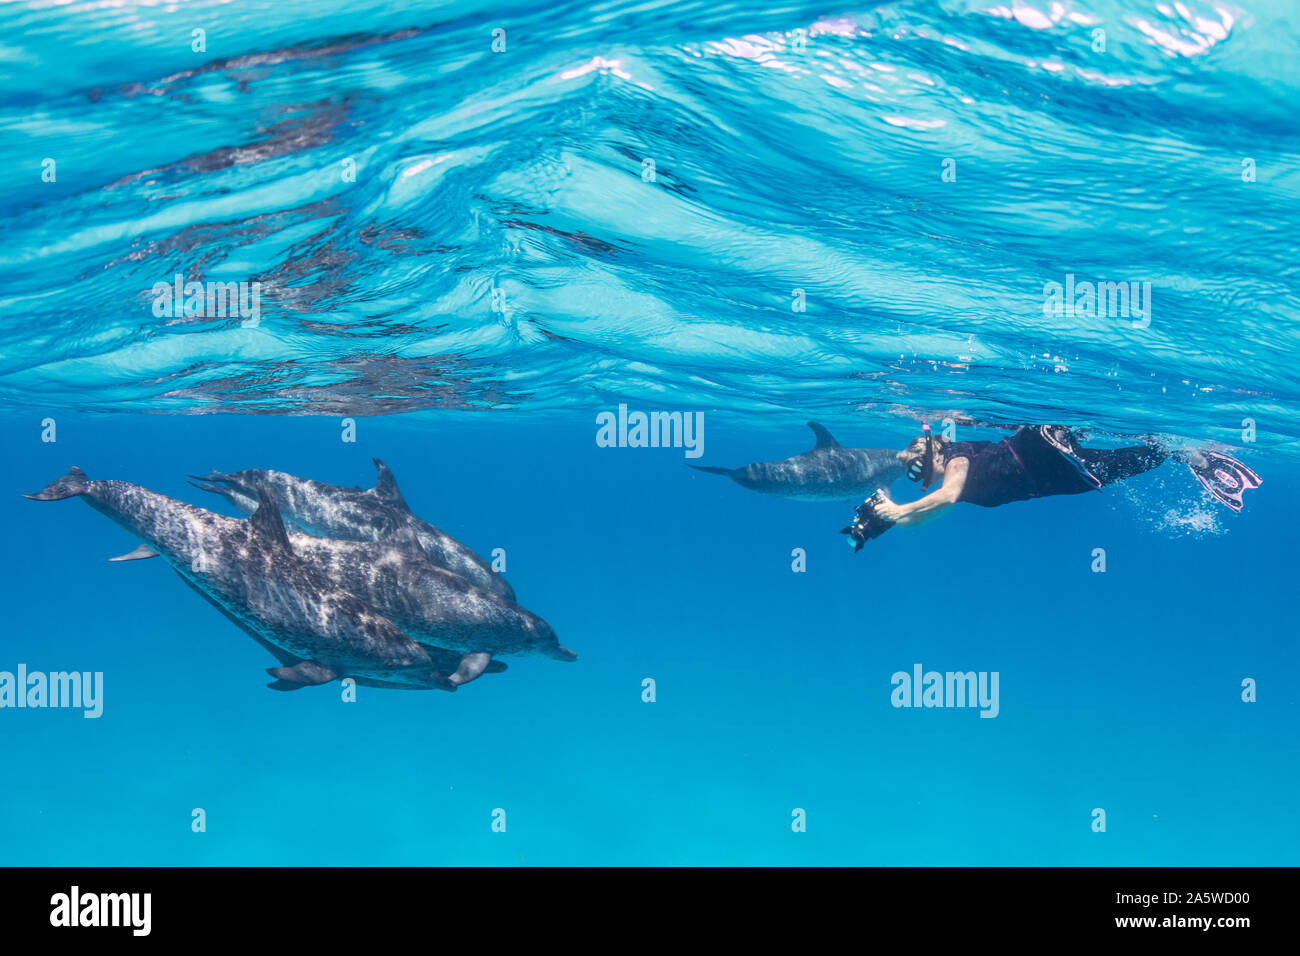 Ein schnorchler erfasst Bilder von einem Pod von Atlantic Spotted Dolphins (Stenella frontalis) in Bimini, Bahamas. Stockfoto